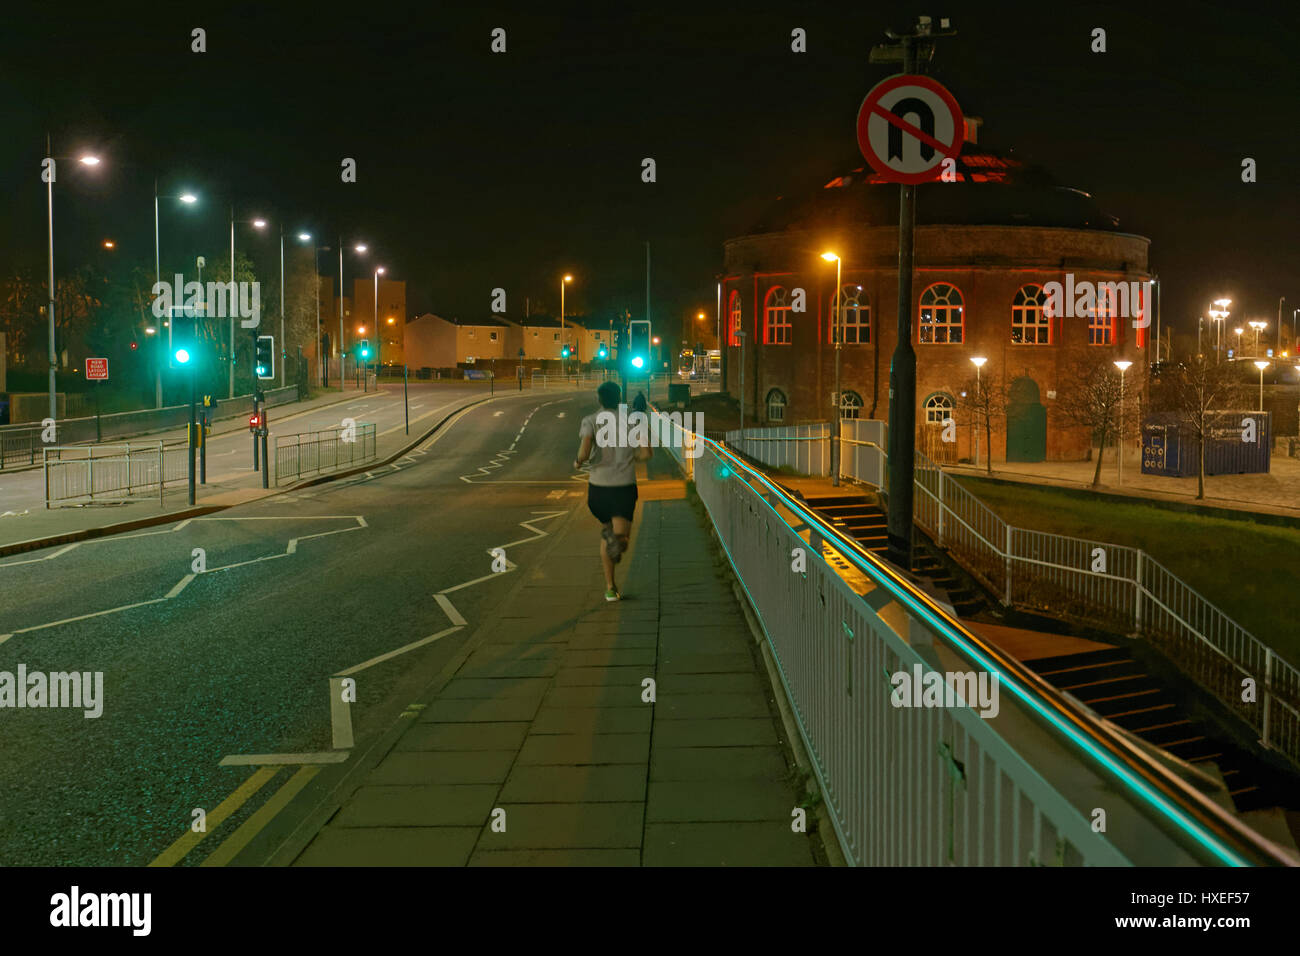 Läufer auf Glasgow Street Night Crossing Brücke gehen keine u Turn grüne Lichter auf Ampel Stockfoto